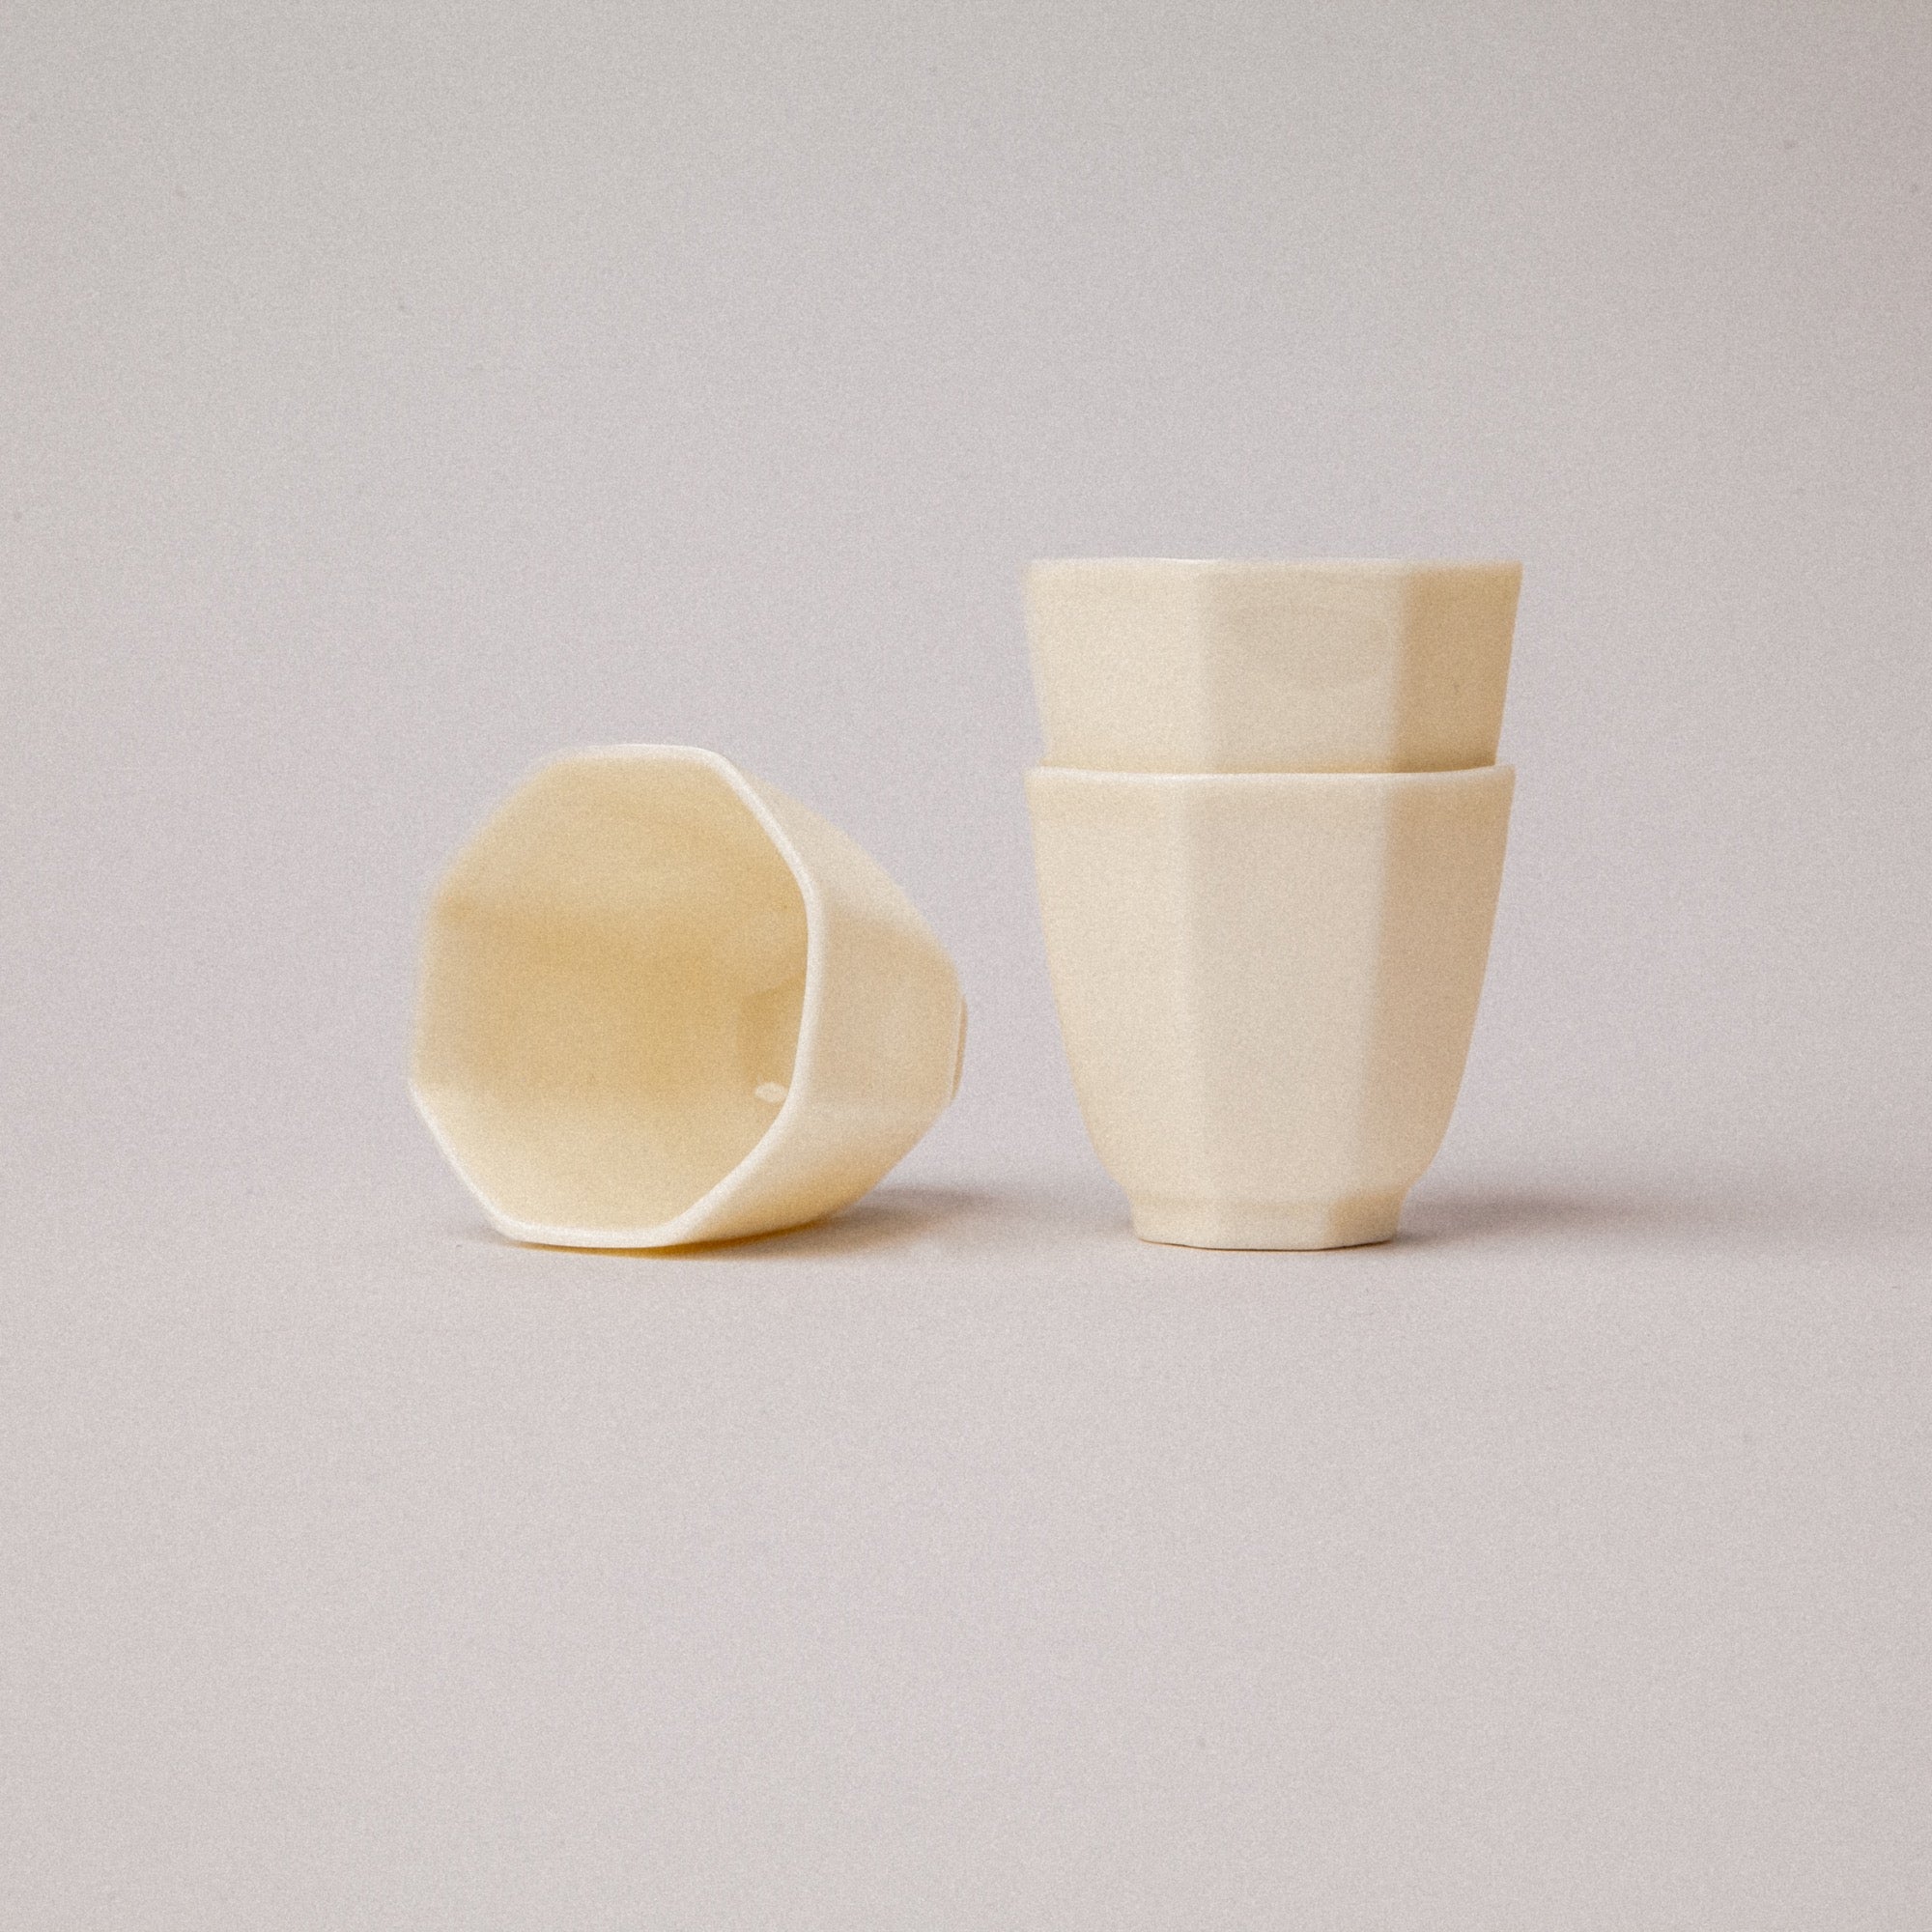 Handmade Dehua Porcelain Teacup